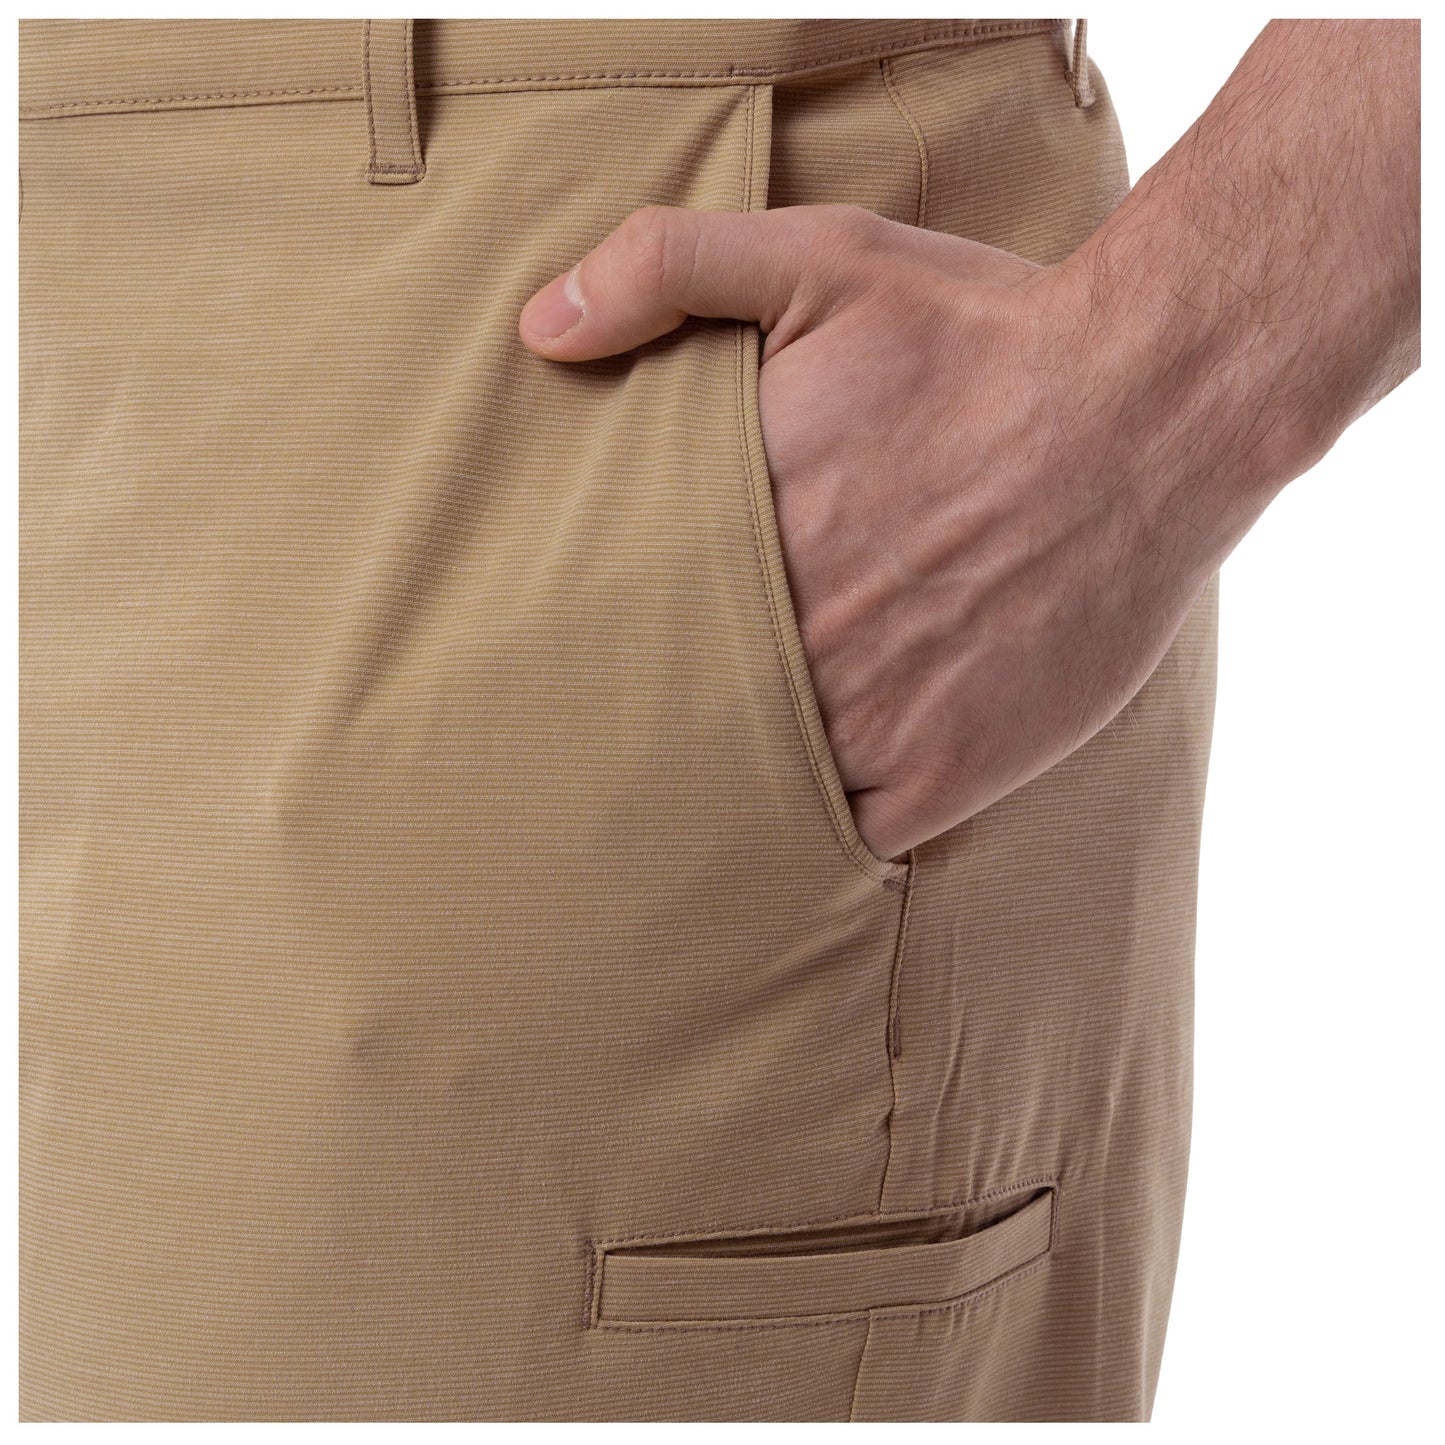 Men's Khaki Performance Hybrid Short 4-Way Stretch